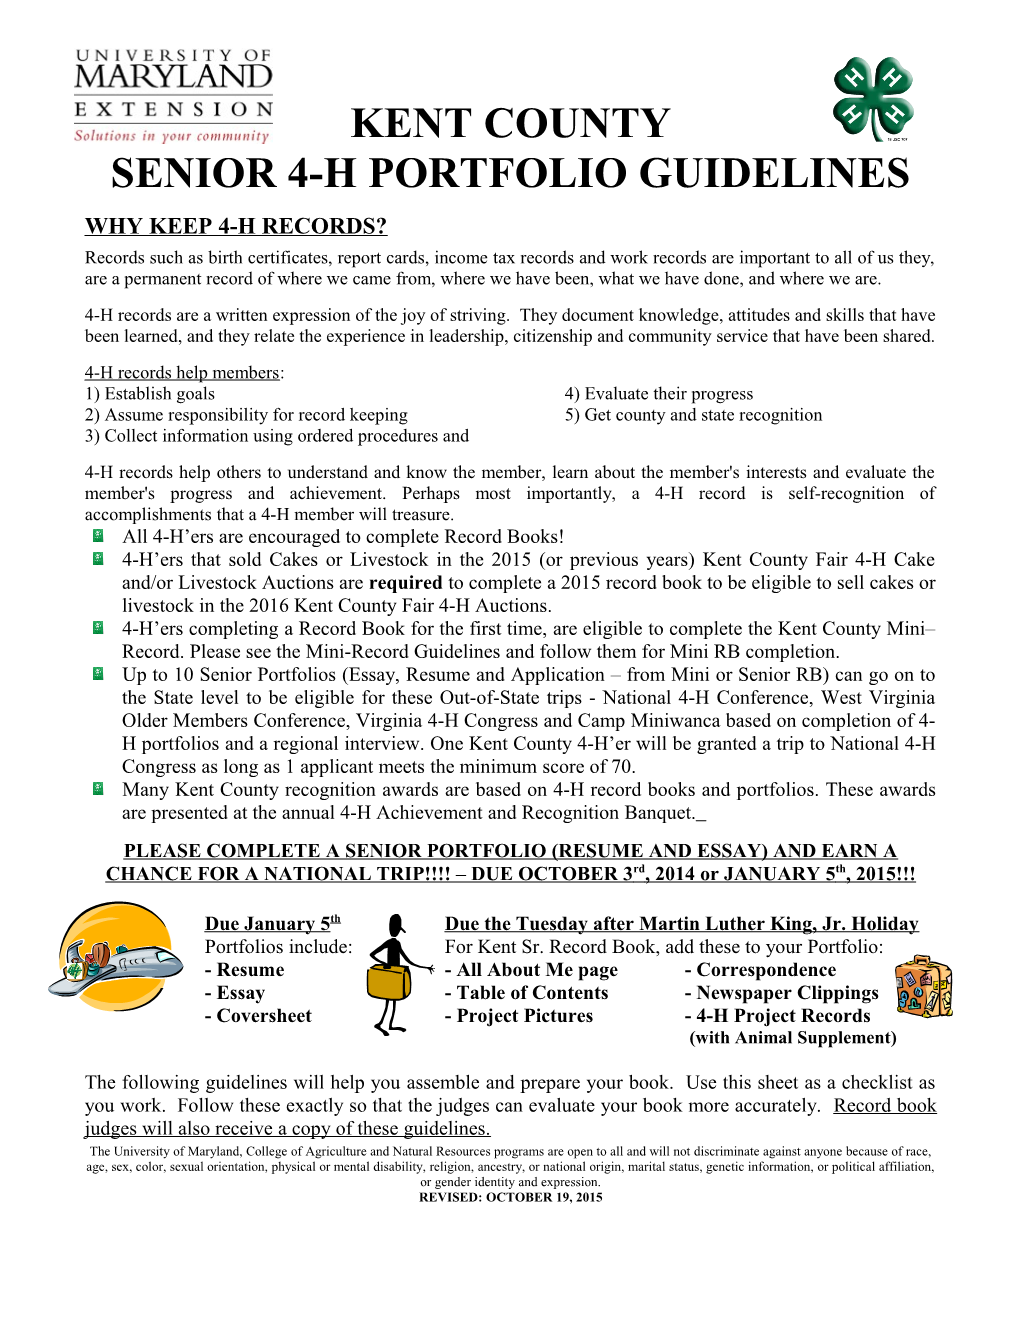 Senior 4-H Portfolio Guidelines